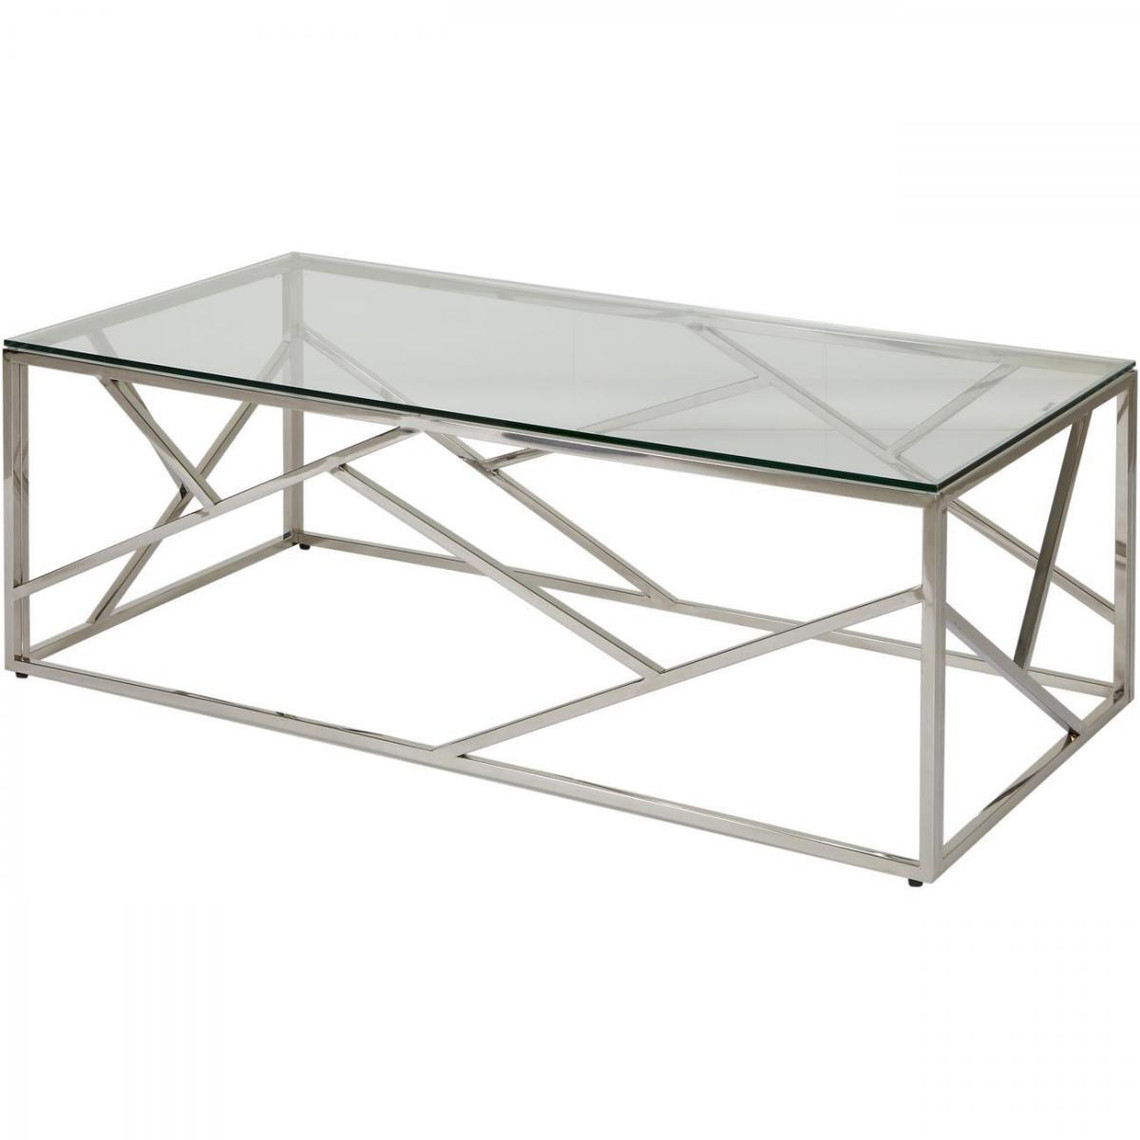 ATHM DESIGN Table basse JENSON Gris - plateau Verre pieds Metal 120 x 60